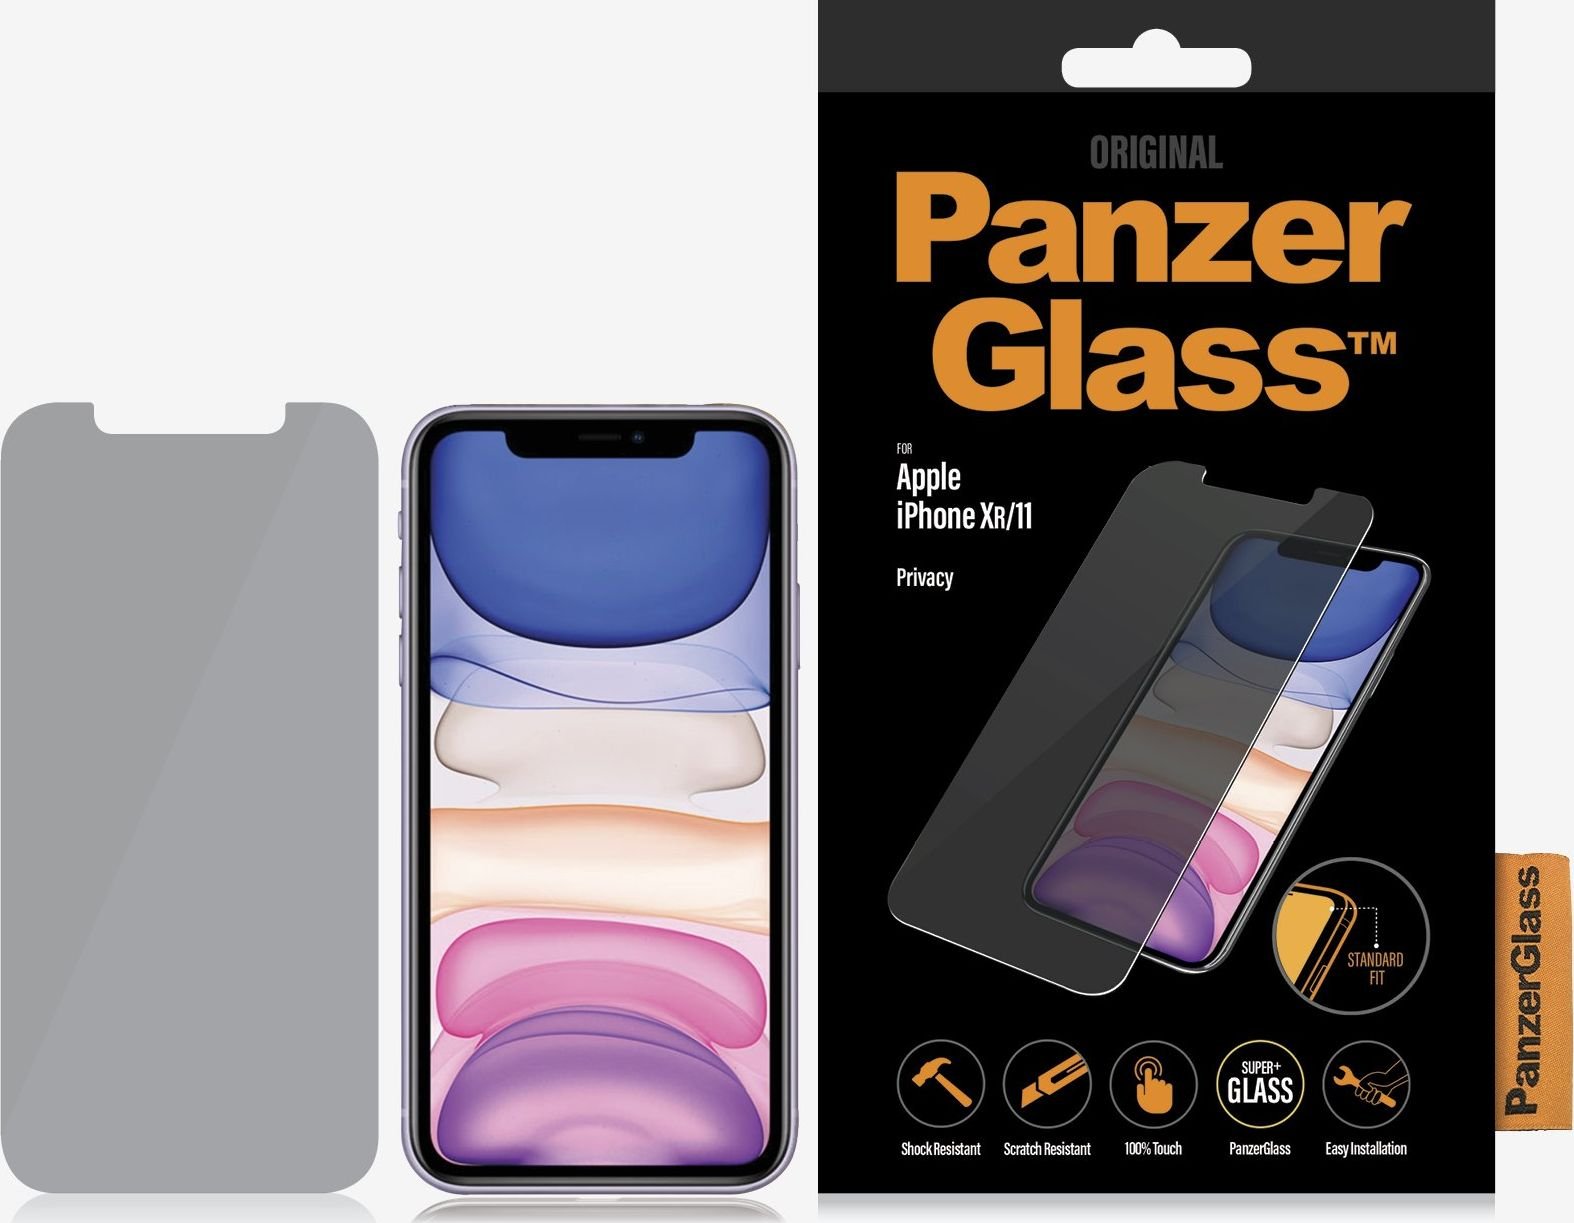 Sticlă securizată PanzerGlass pentru iPhone XR/11 Privacy (P2662)